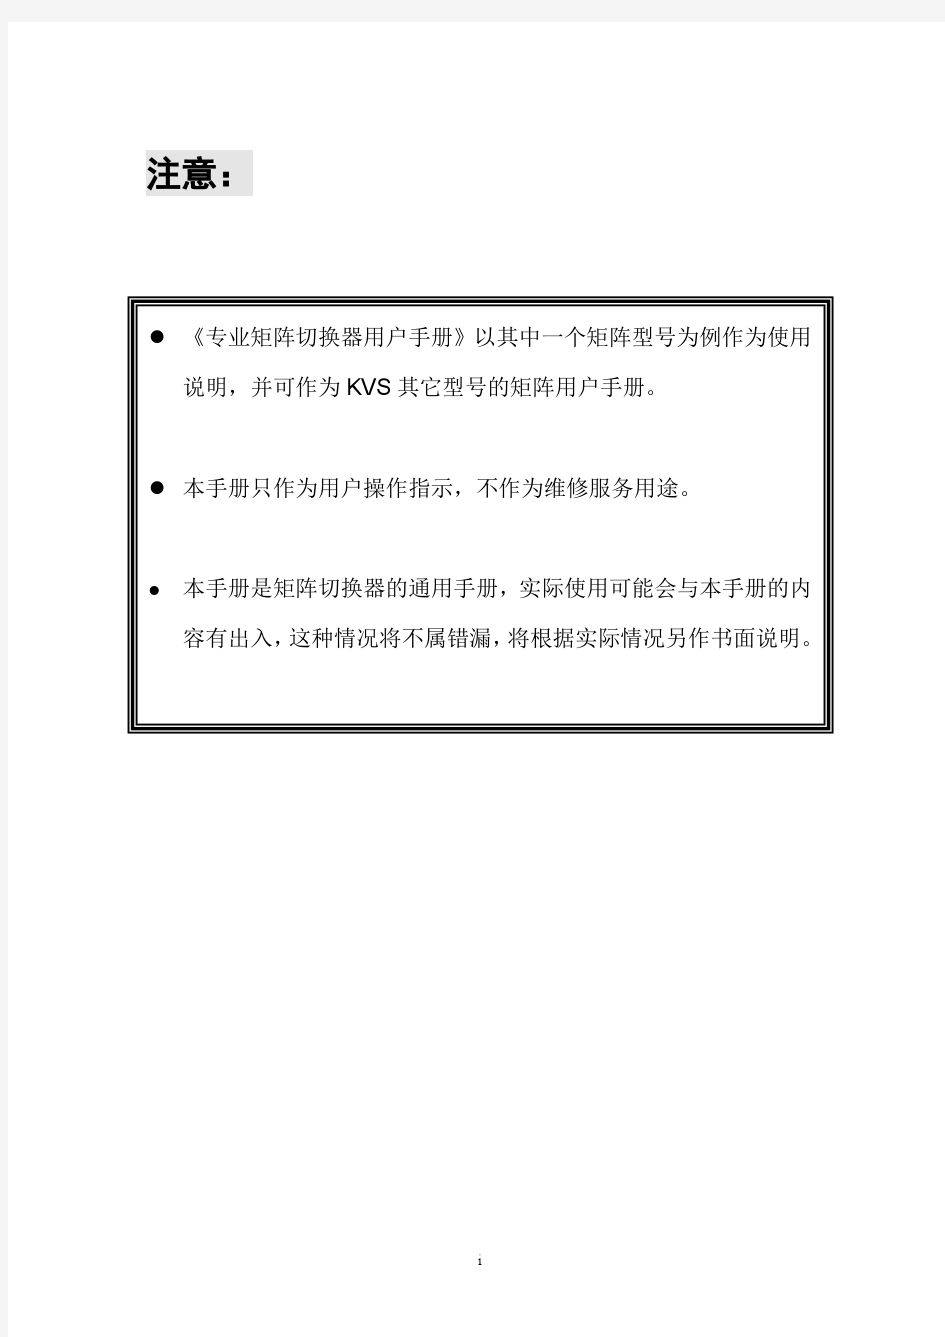 深圳市天科恒业科技有限公司(KVS)矩阵产品手册 V1.3